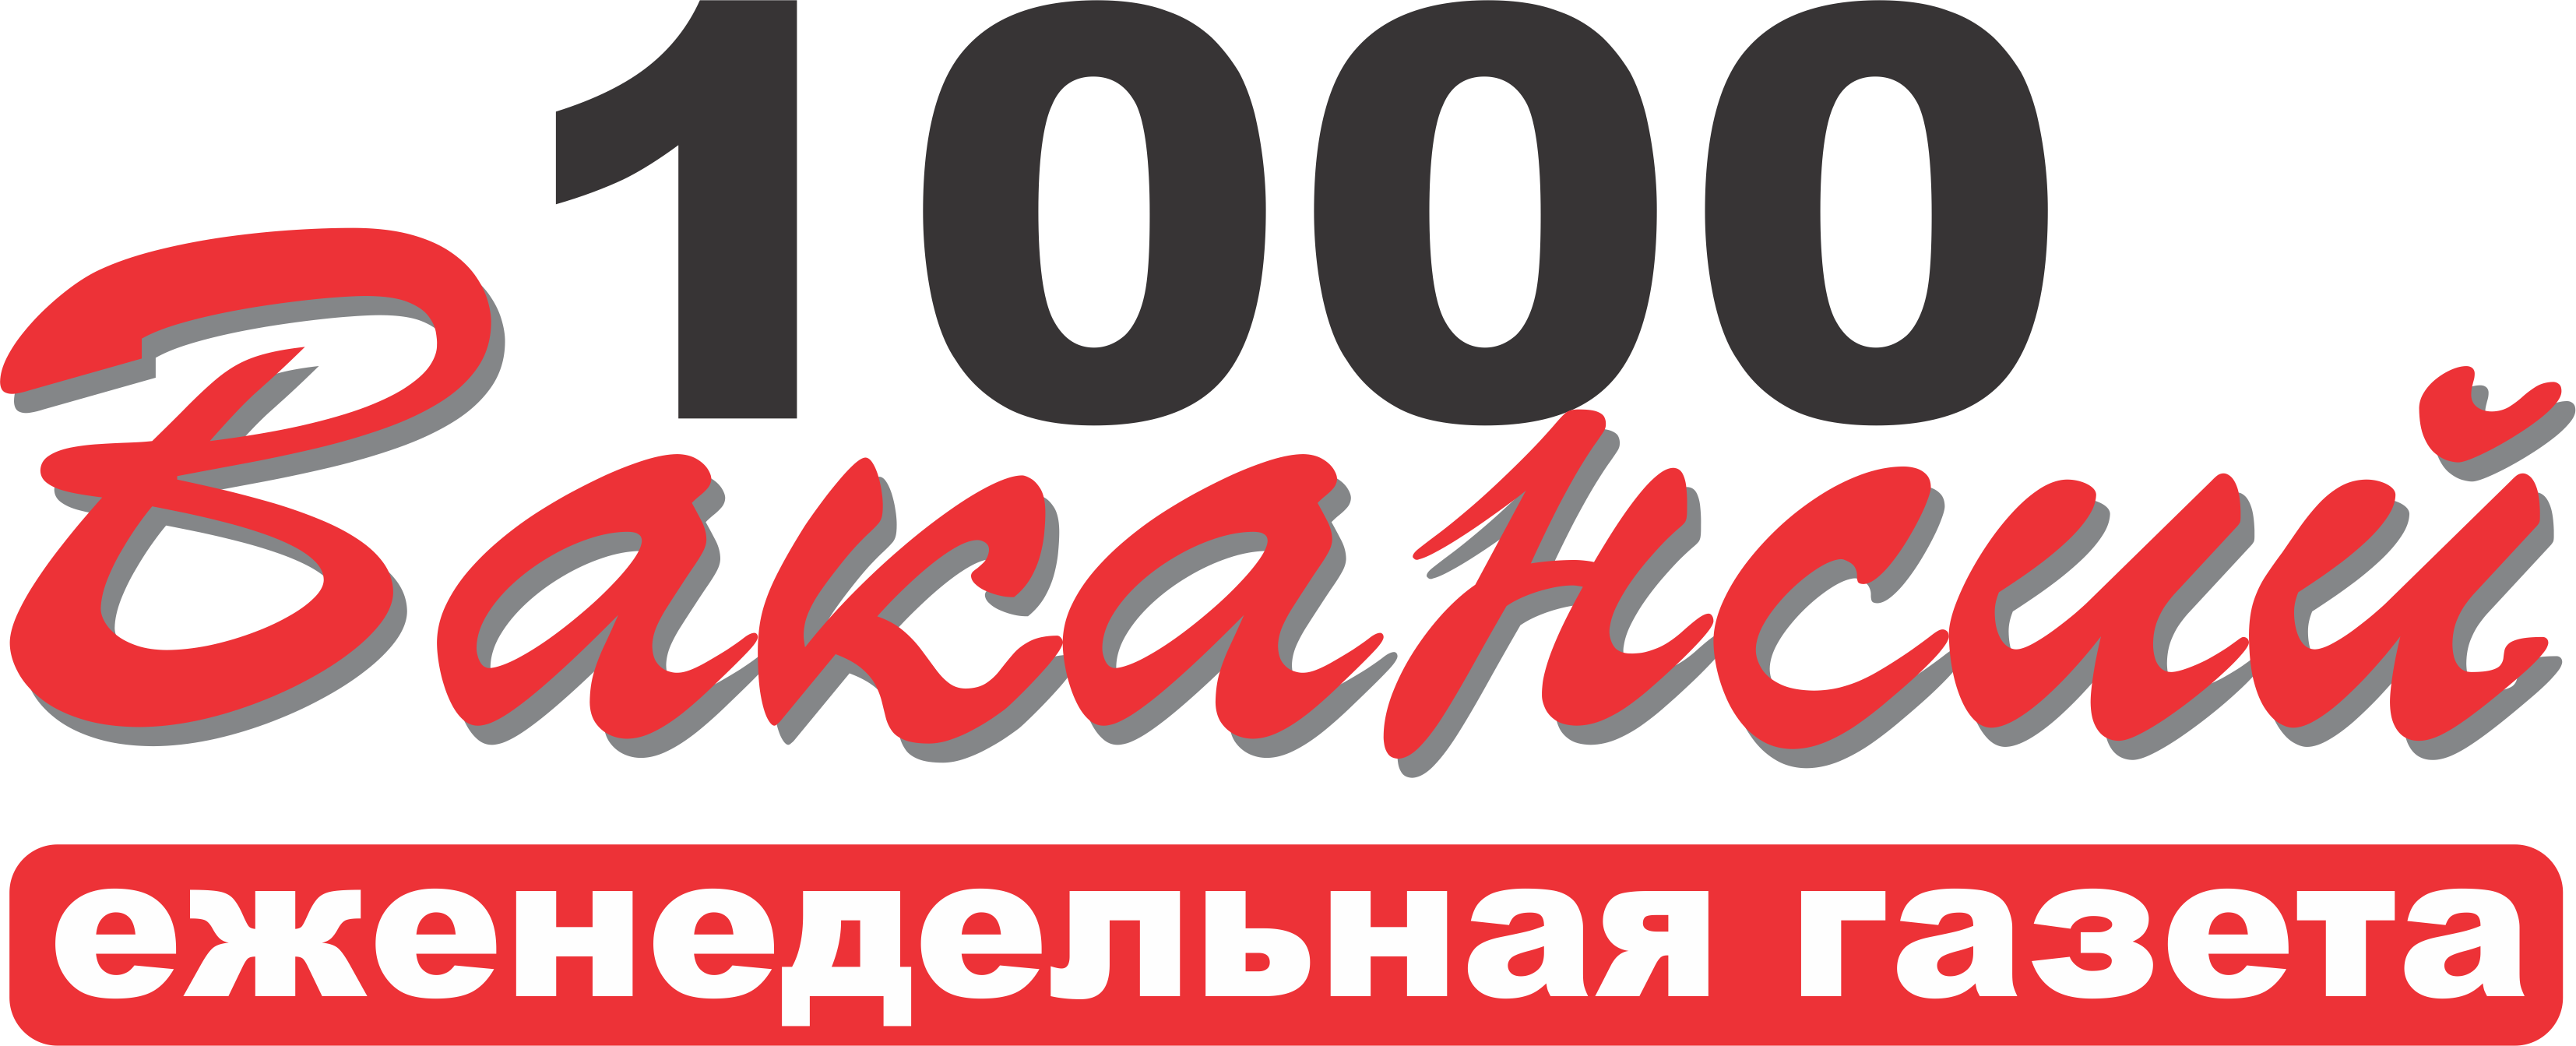 10000 вакансий, газета, г.Волгоград